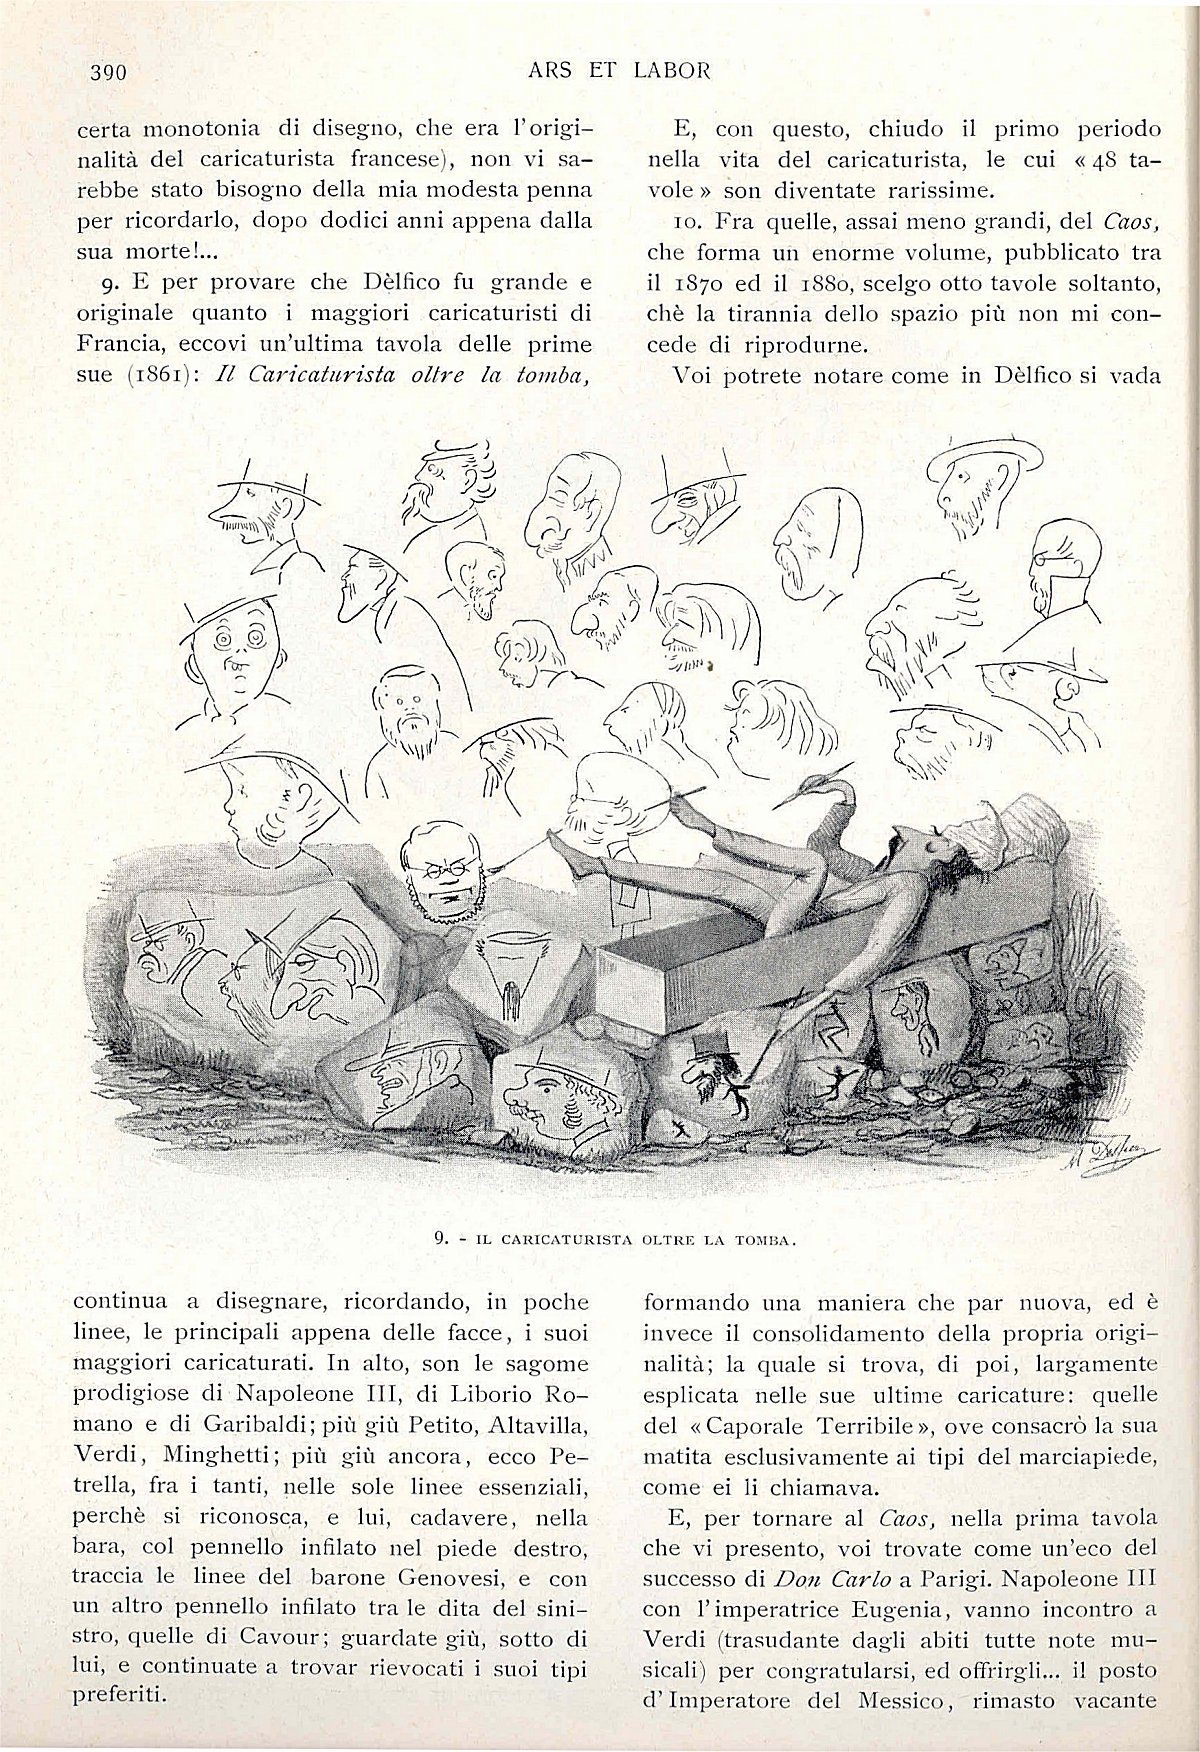 "Ars et Labor", Maggio 1906, anno 61°, n. 5, pag. 390